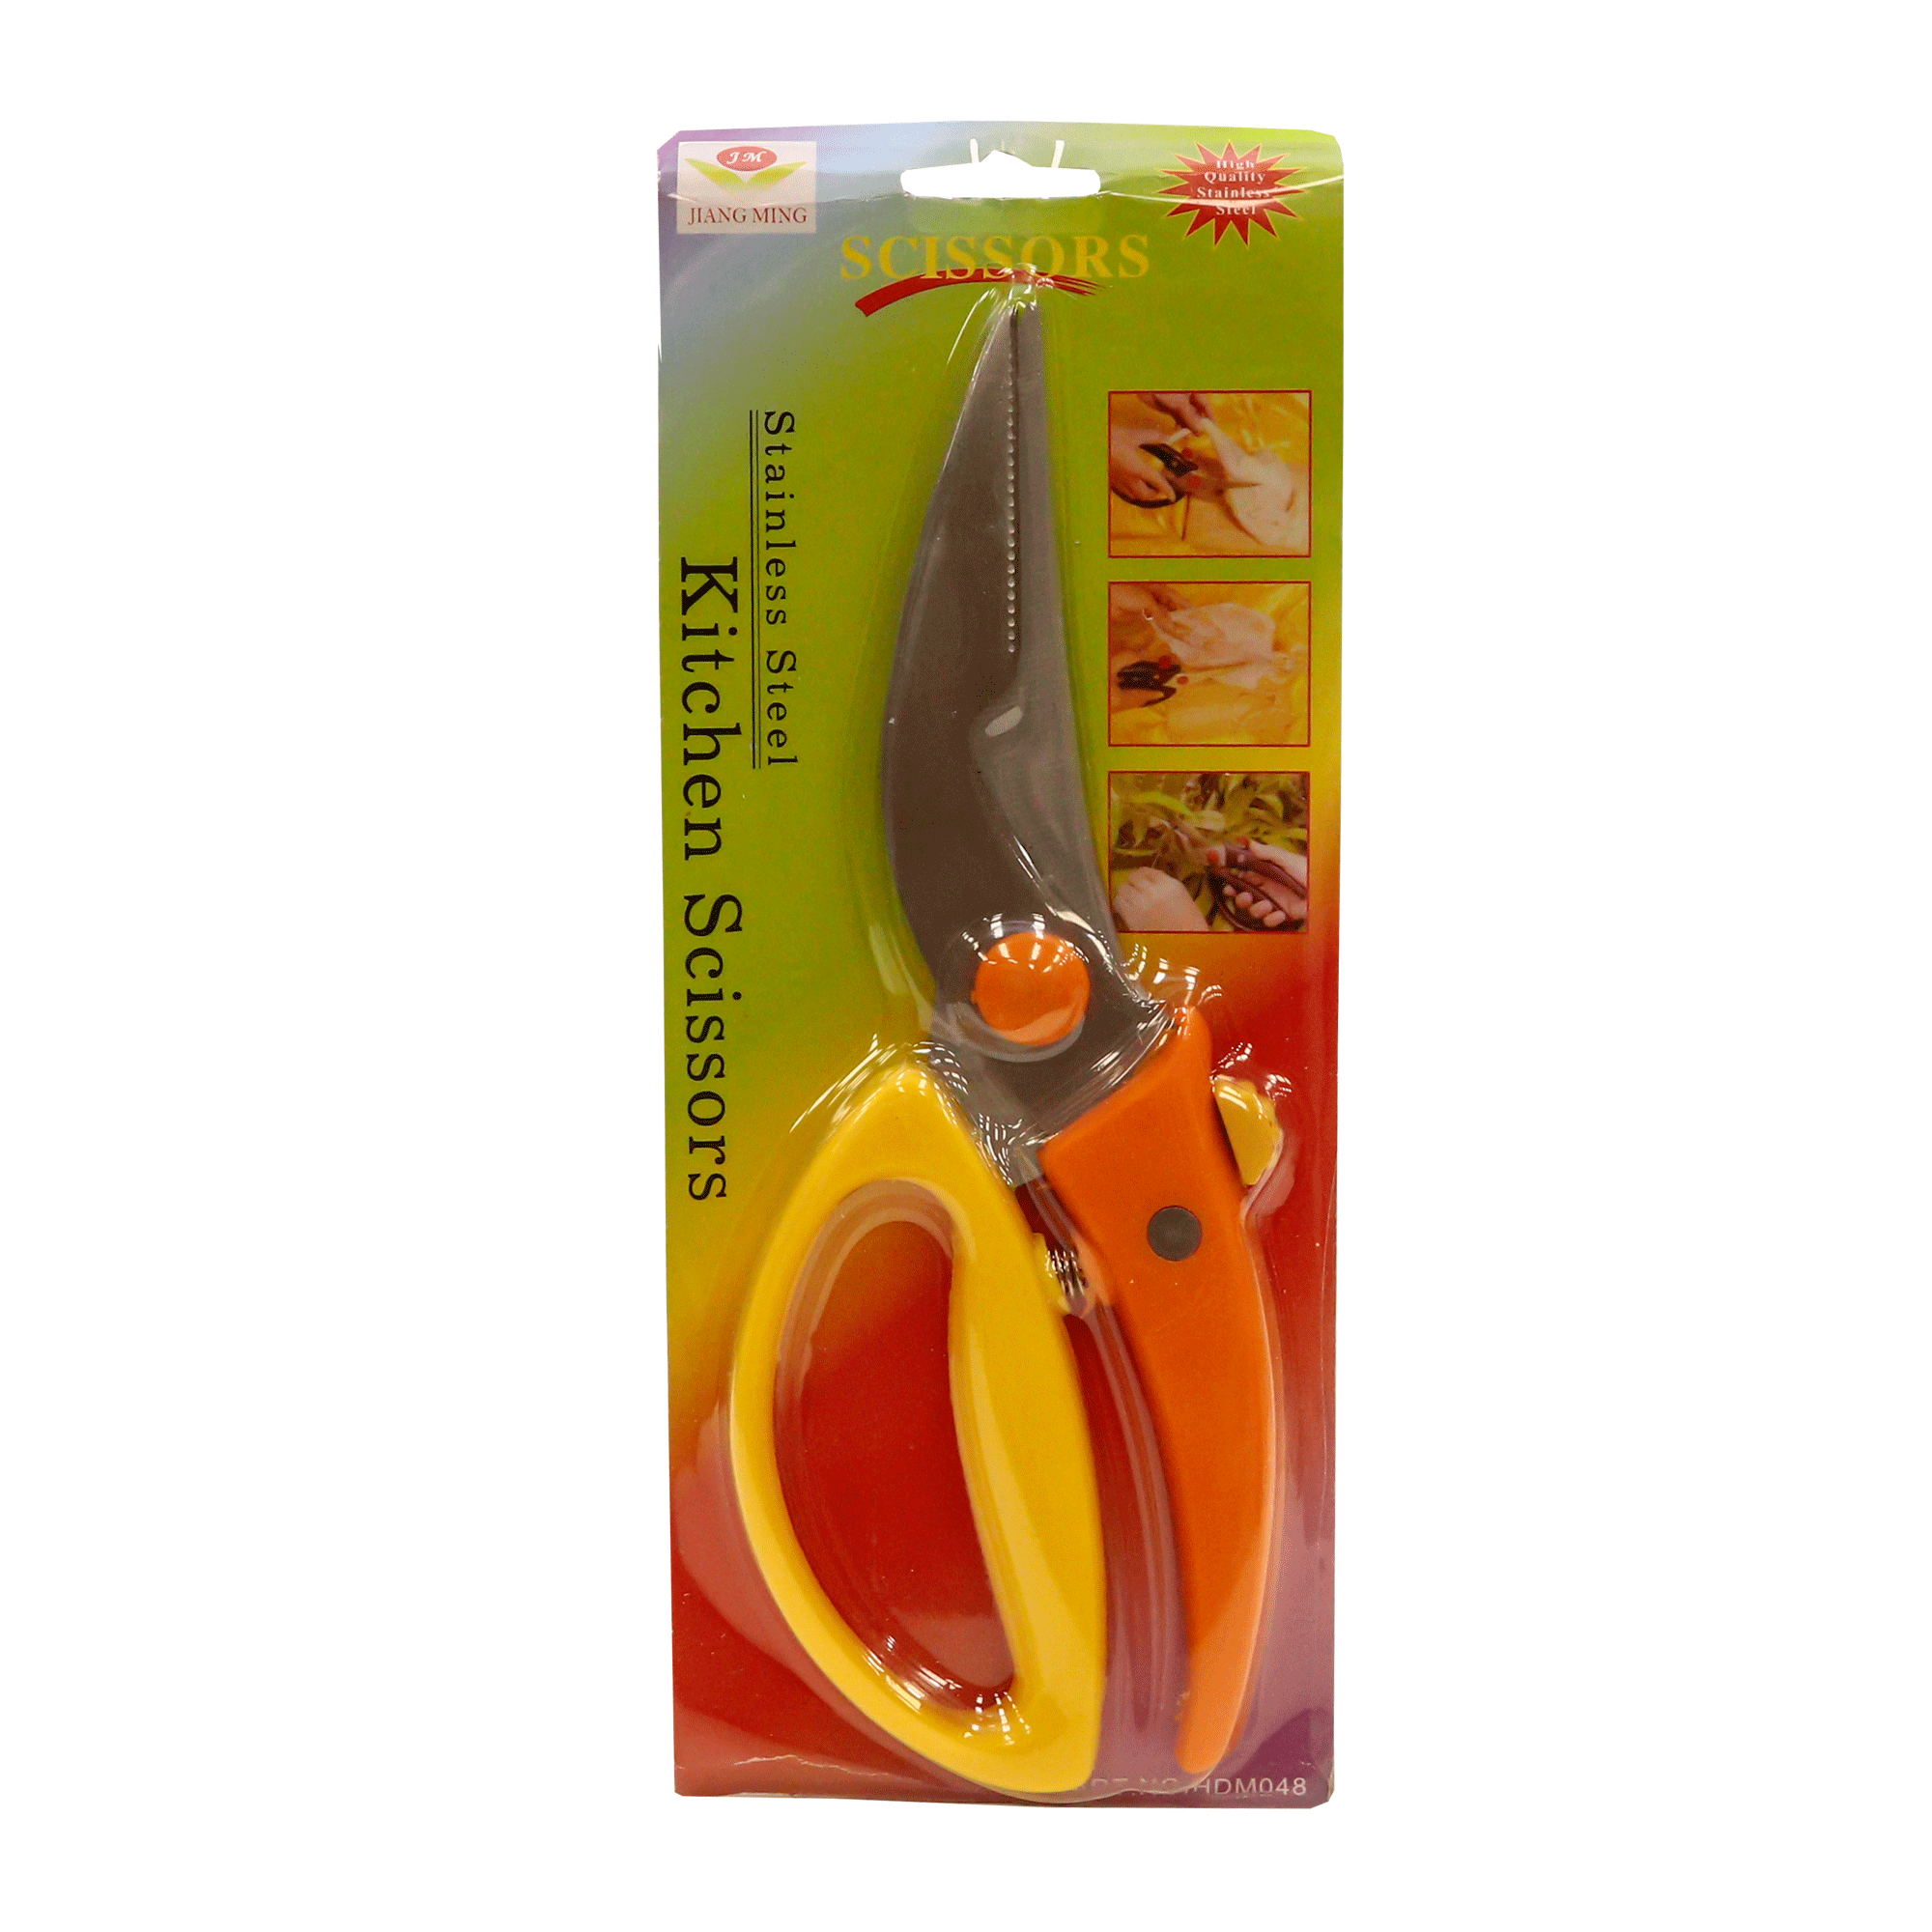 Kitchen scissors Jing Ming 21-9 5017